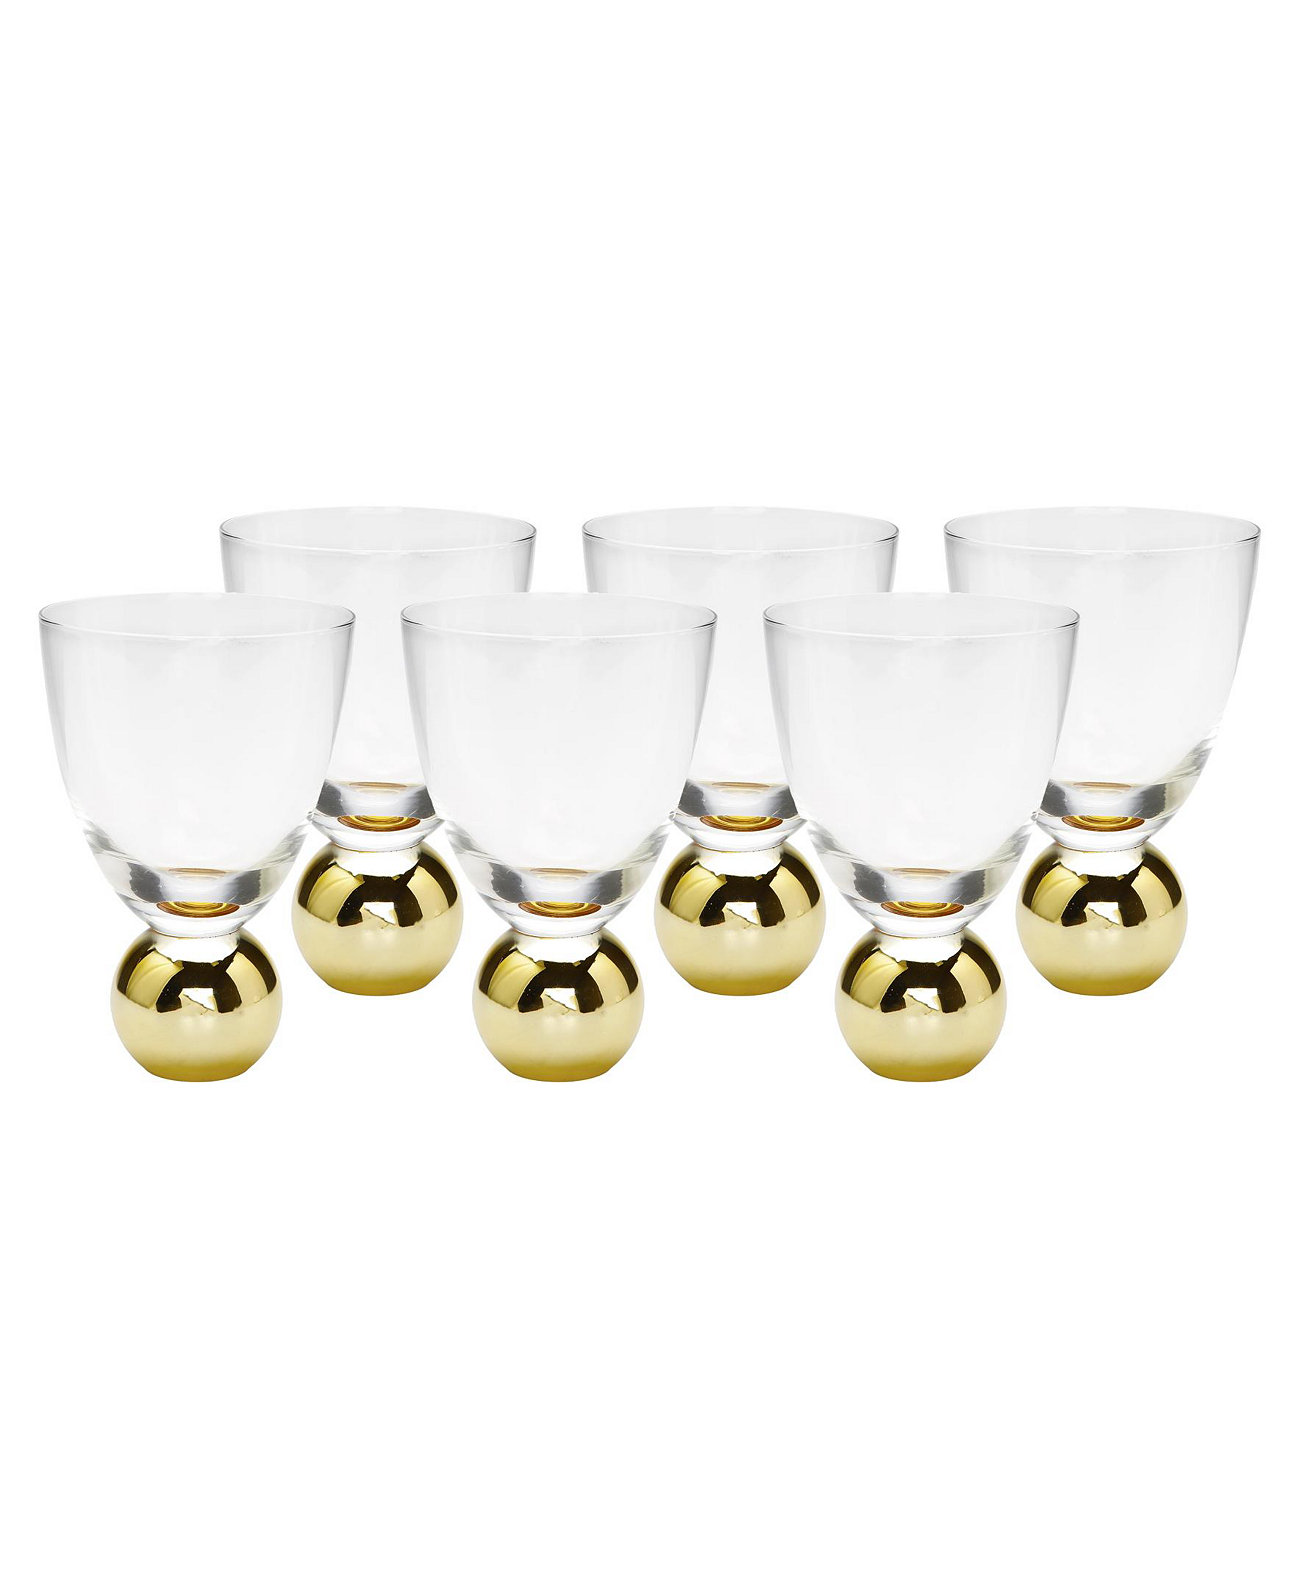 Маленькие бокалы для вина на пьедестале из золотых шаров, набор из 6 шт. Classic Touch